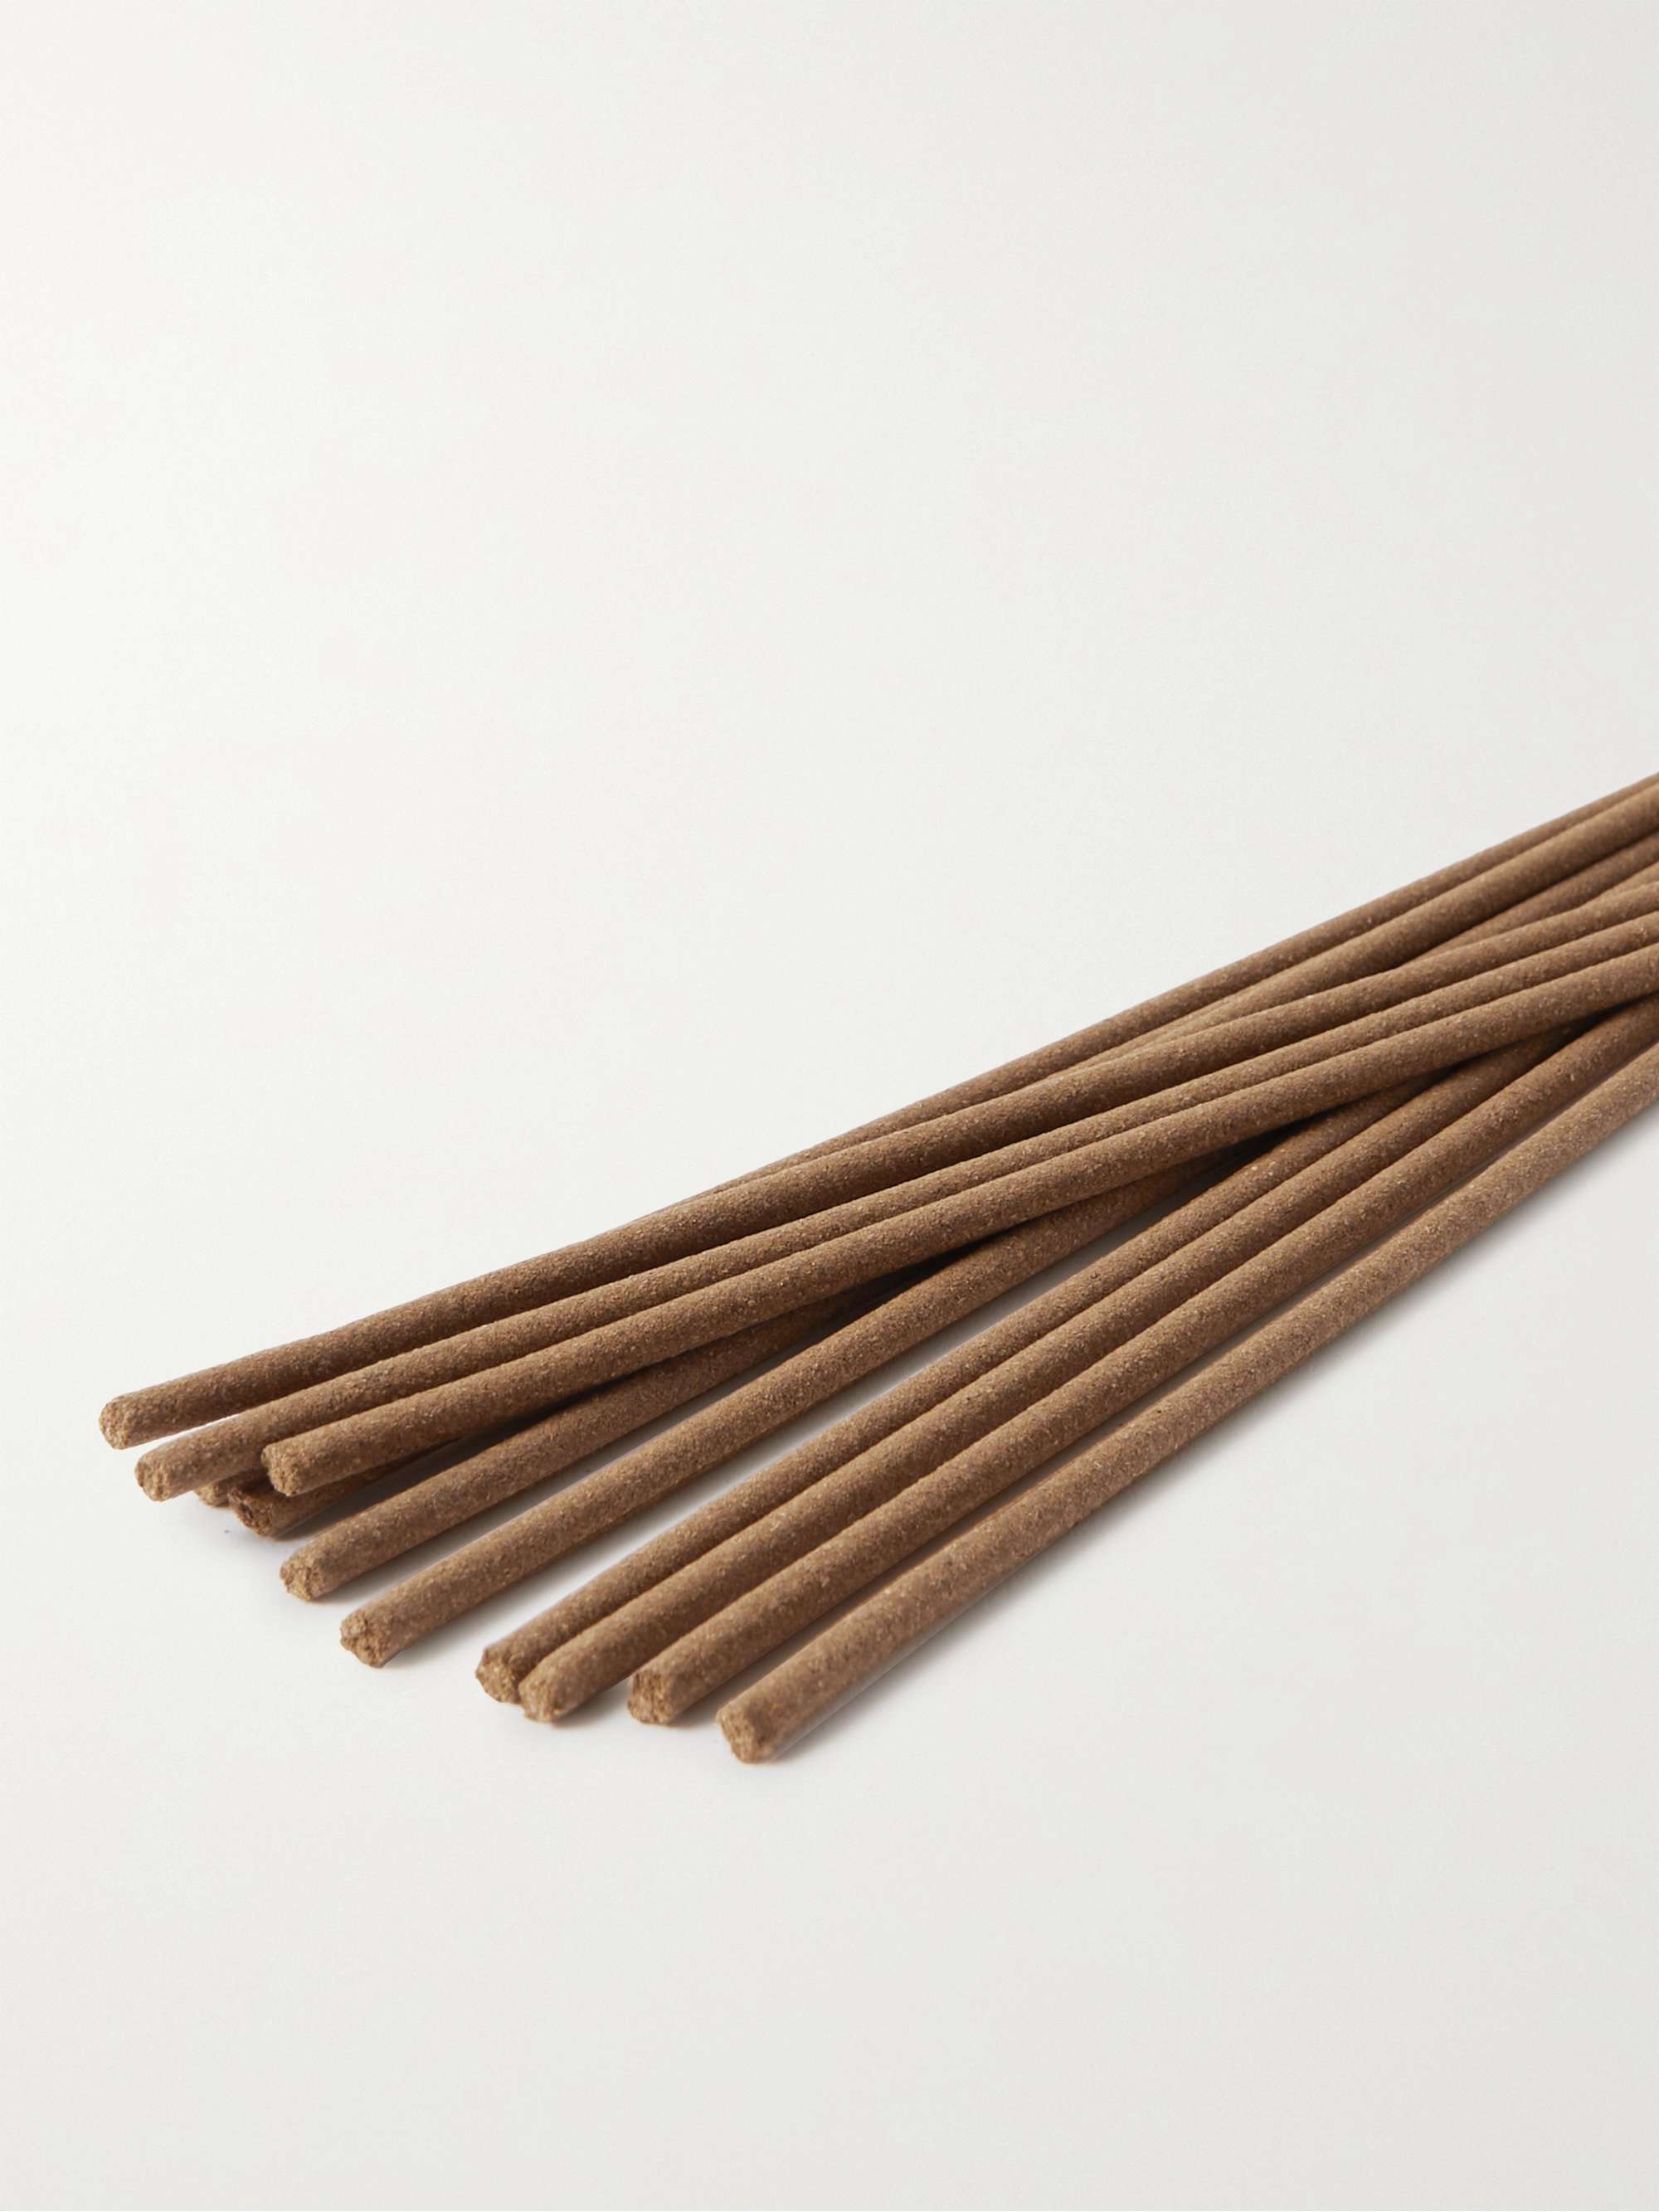 SATTA Mexican Copal Incense Sticks